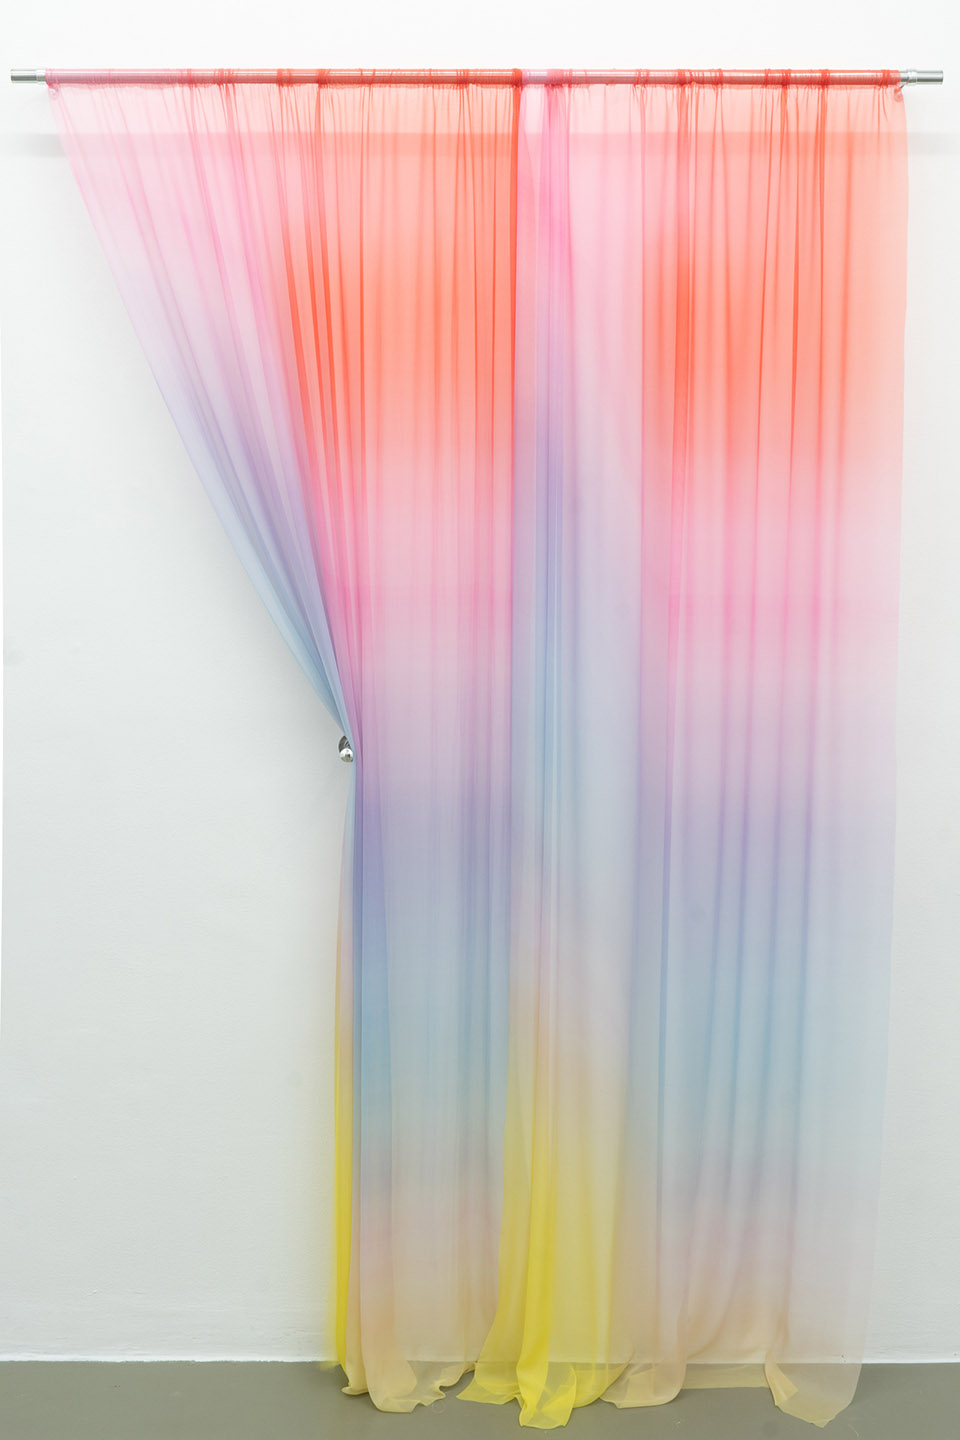 Justin Morin的织物艺术/将实景图像转化成织物的渐变色彩-17